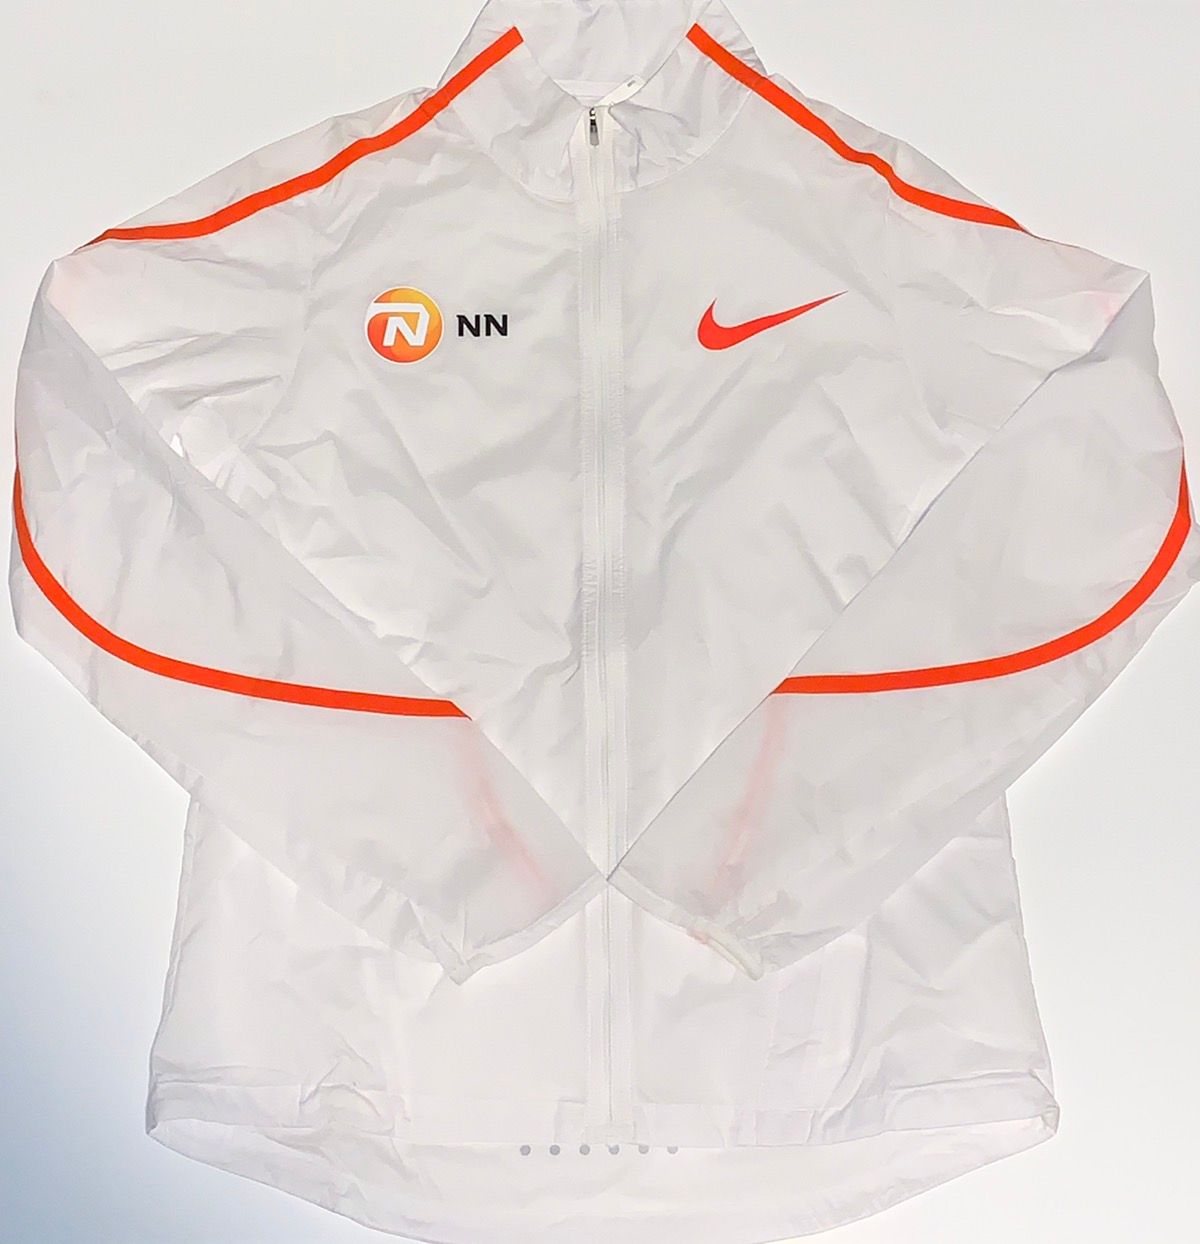 Nike Unreleased Nike Elite NN Running Team Jacket Eliud Kipchoge